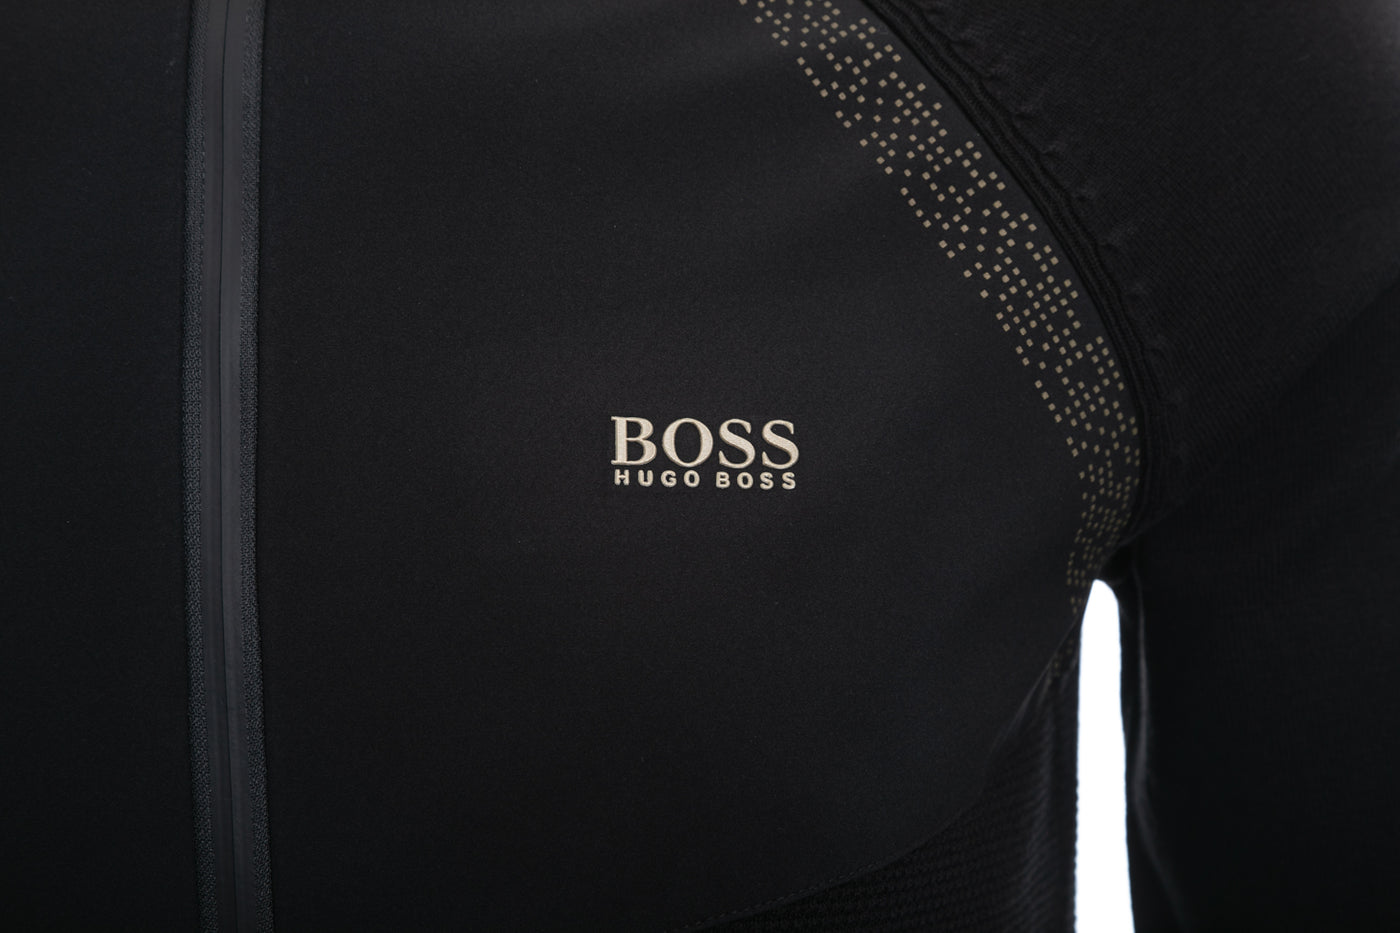 BOSS Zaxel Knitwear in Black